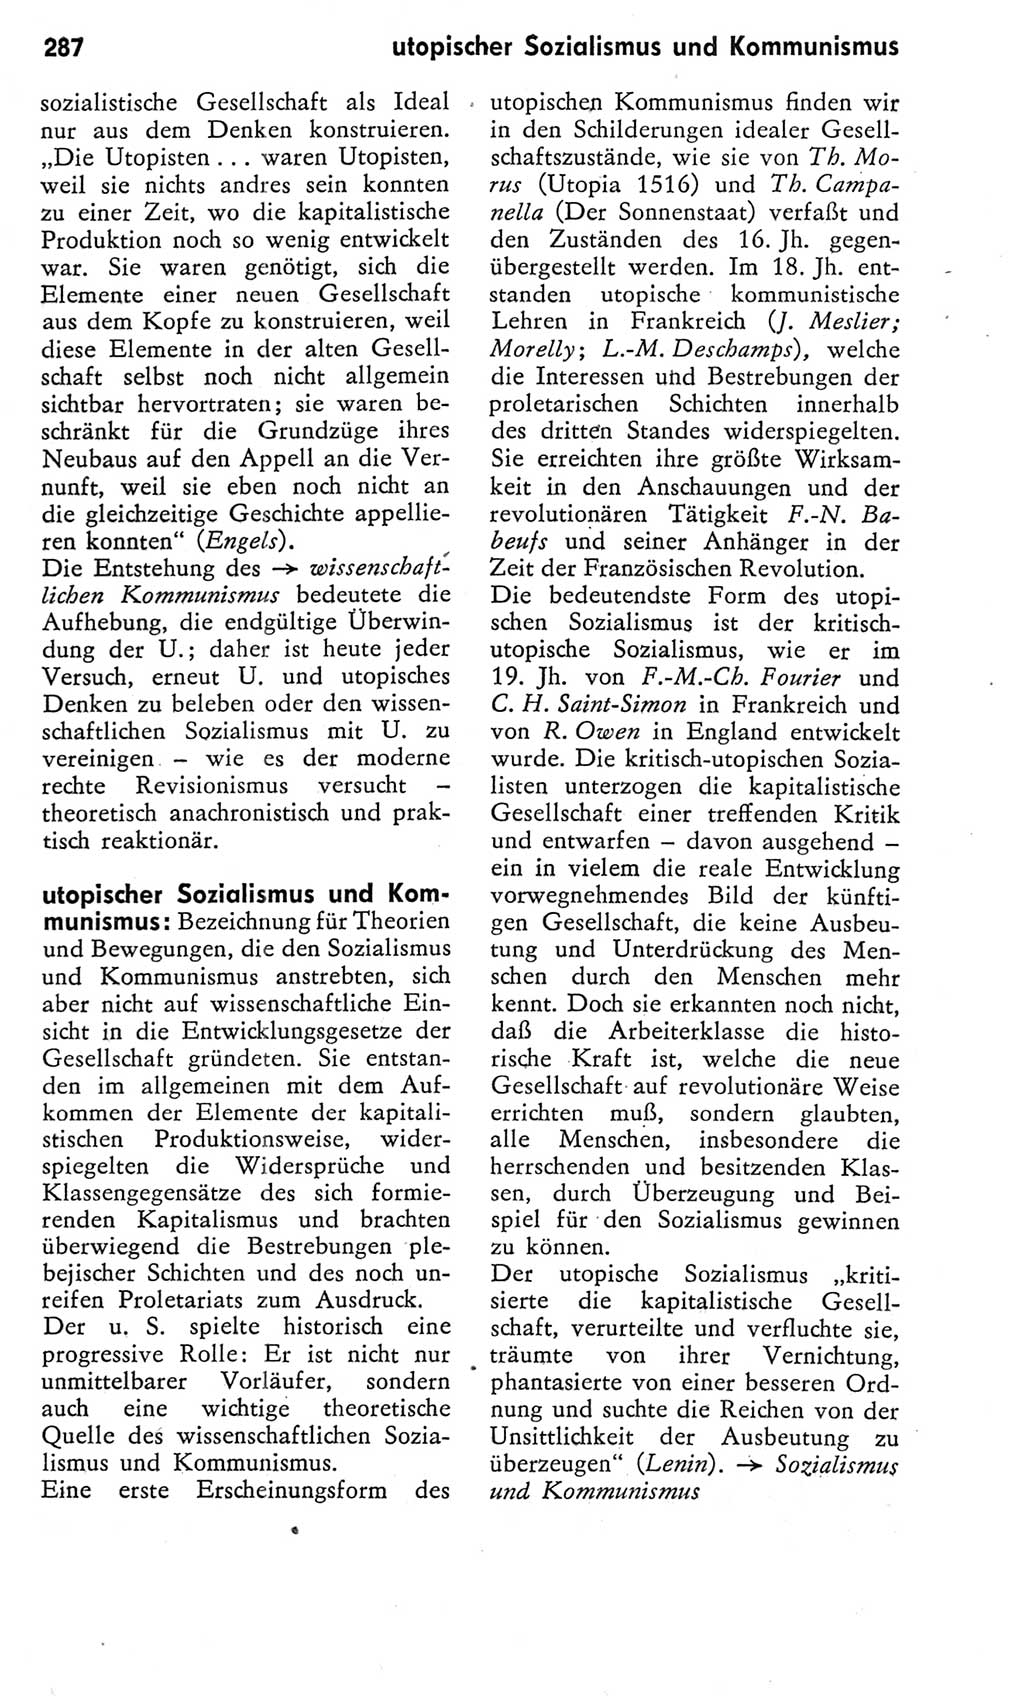 Kleines Wörterbuch der marxistisch-leninistischen Philosophie [Deutsche Demokratische Republik (DDR)] 1975, Seite 287 (Kl. Wb. ML Phil. DDR 1975, S. 287)